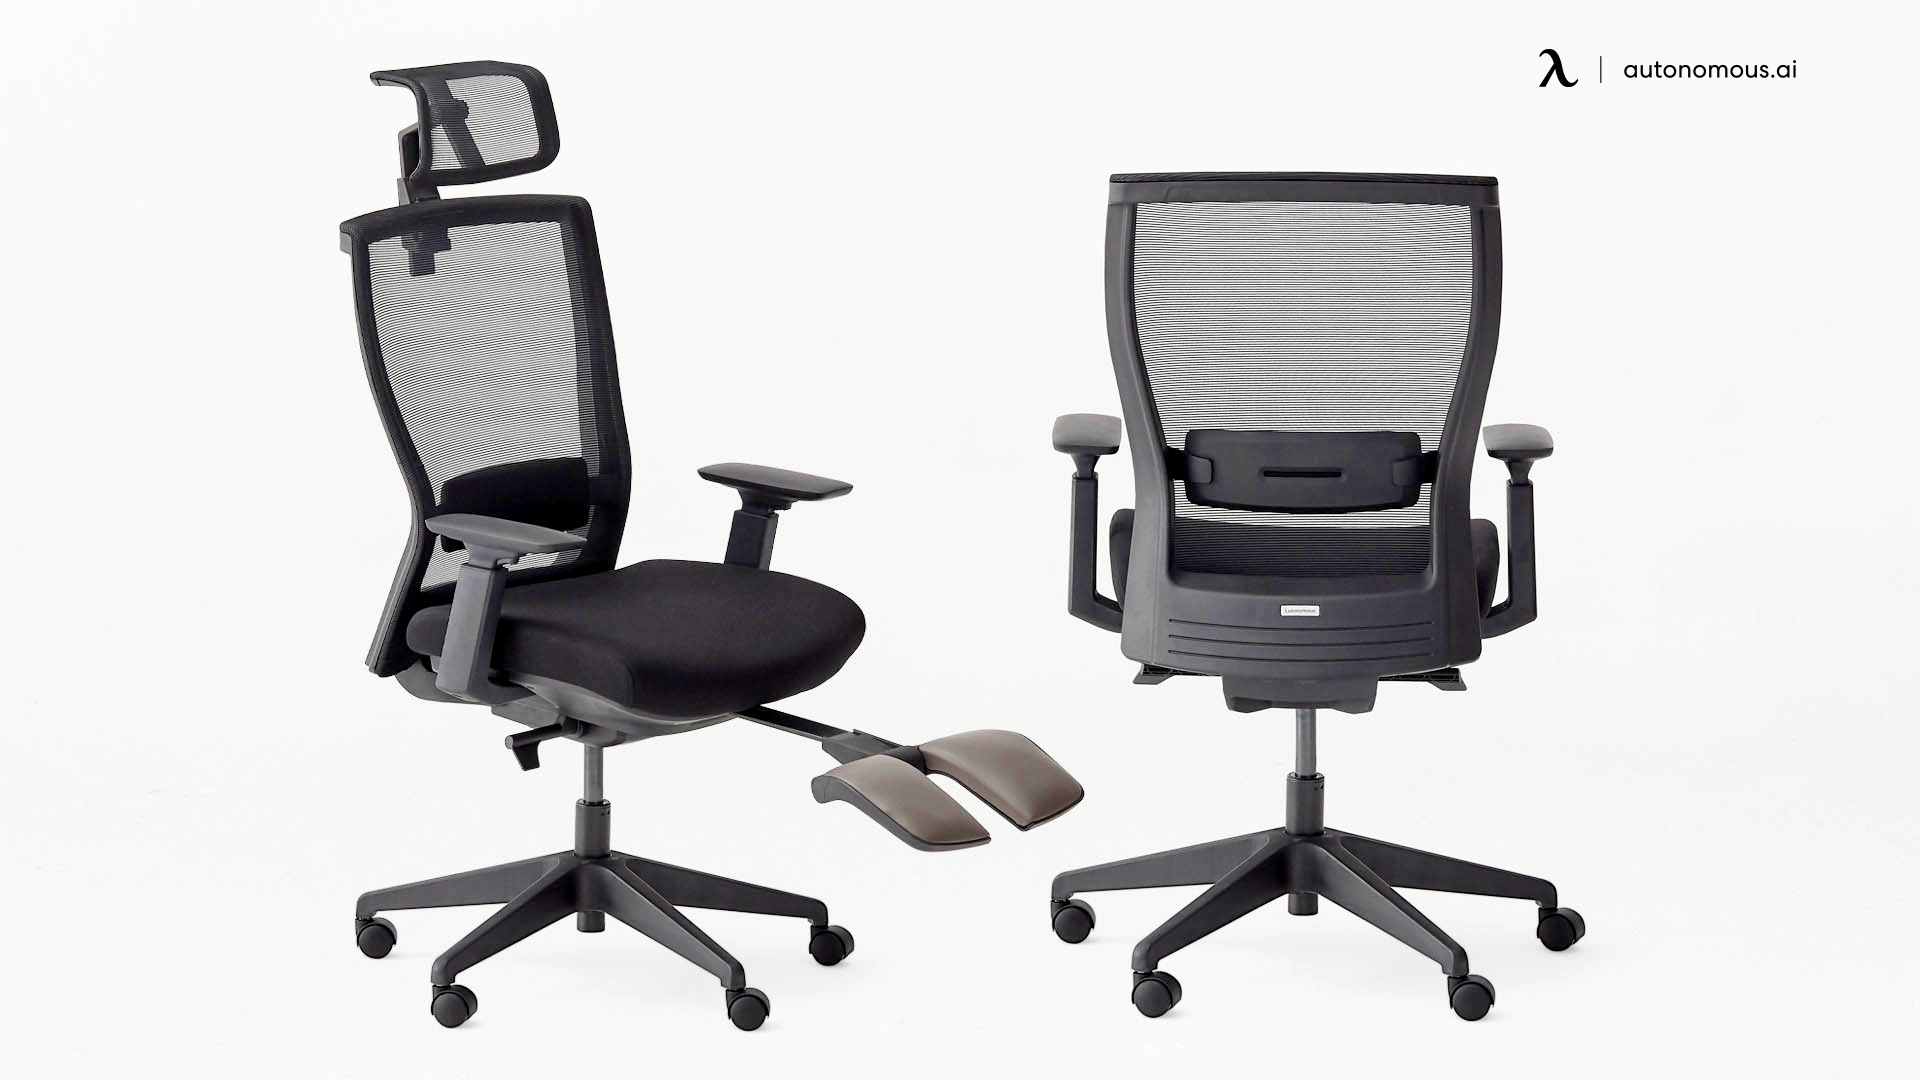 ErgoChair Recline minimalist office chair